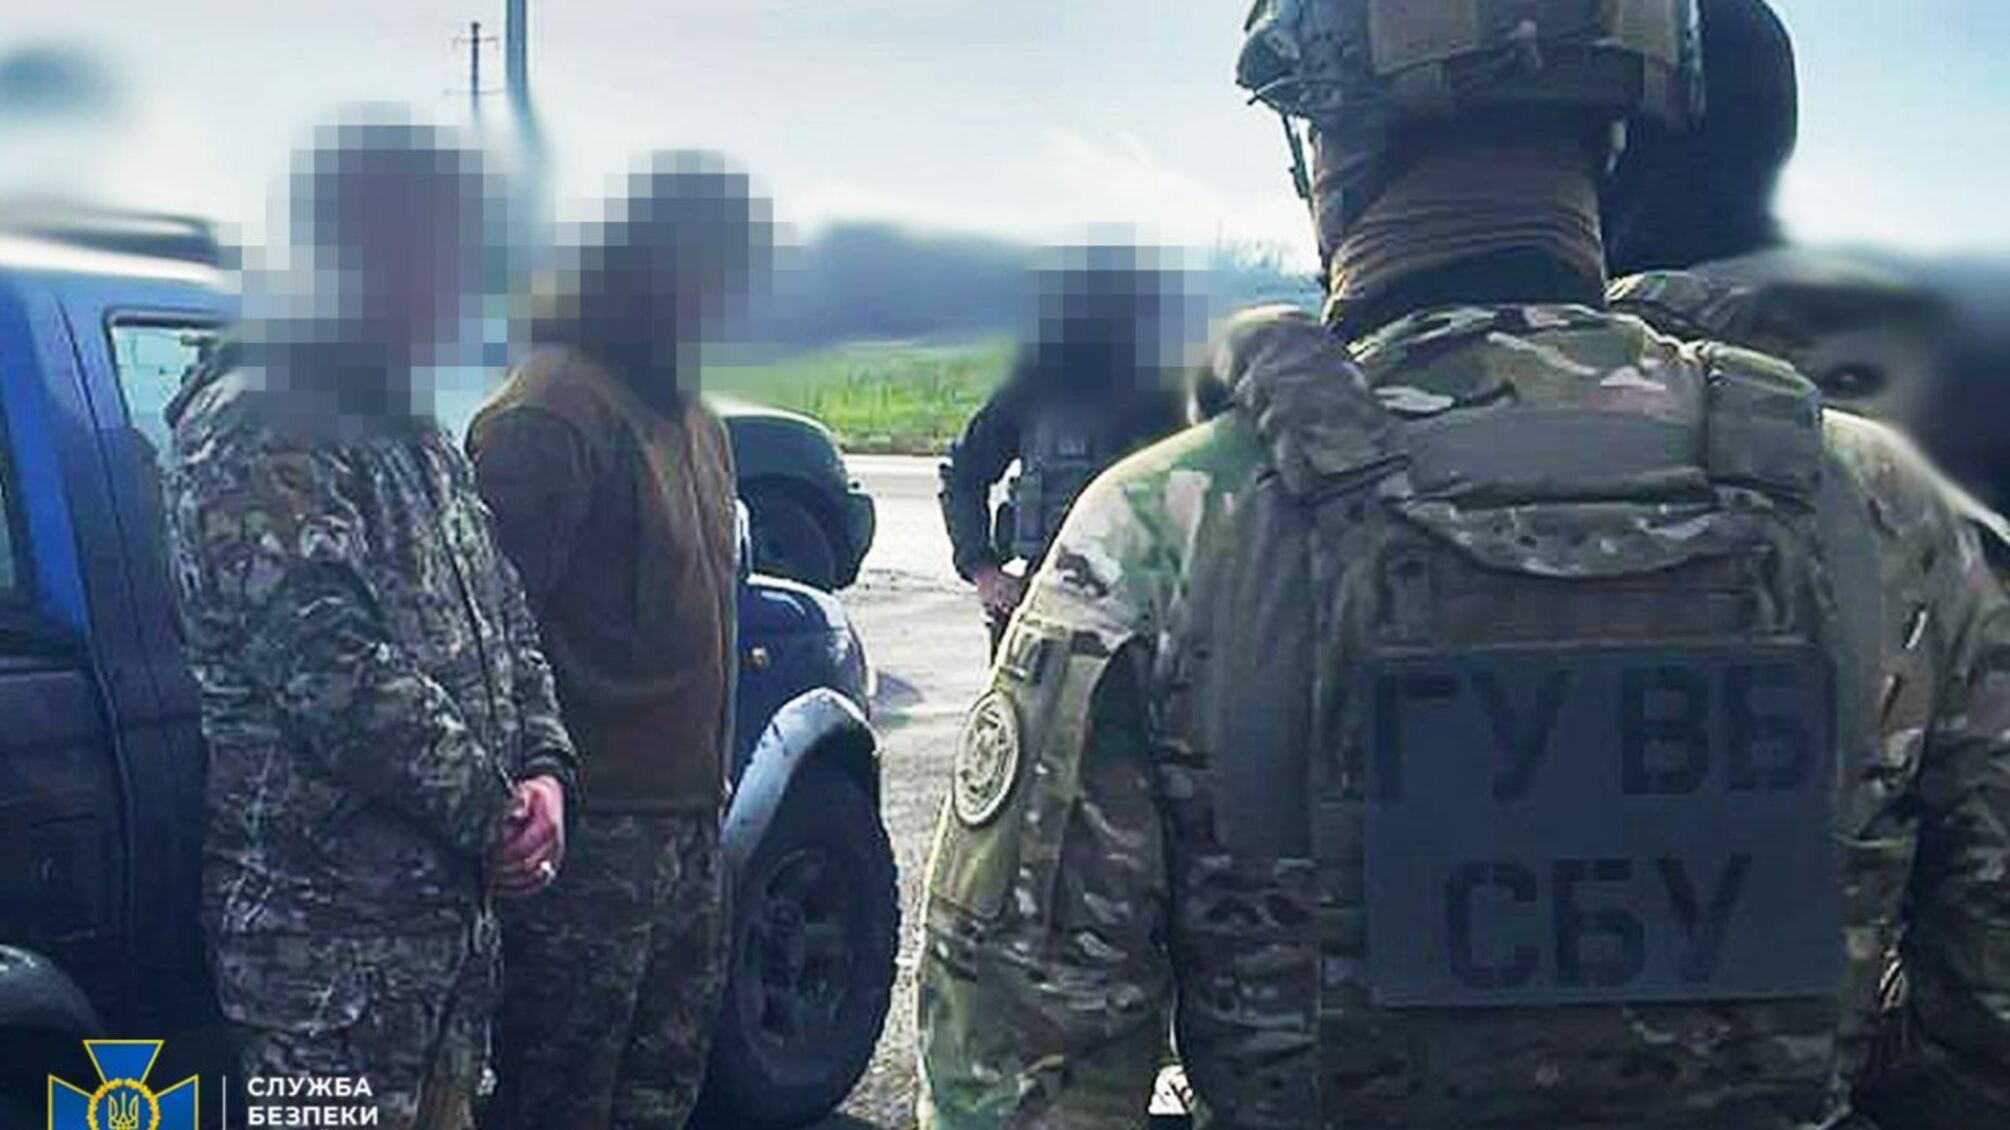 Хотели продать криминалитету 'трофейного' российское оружие: СБУ задержала в Донецкой области двух дельцов